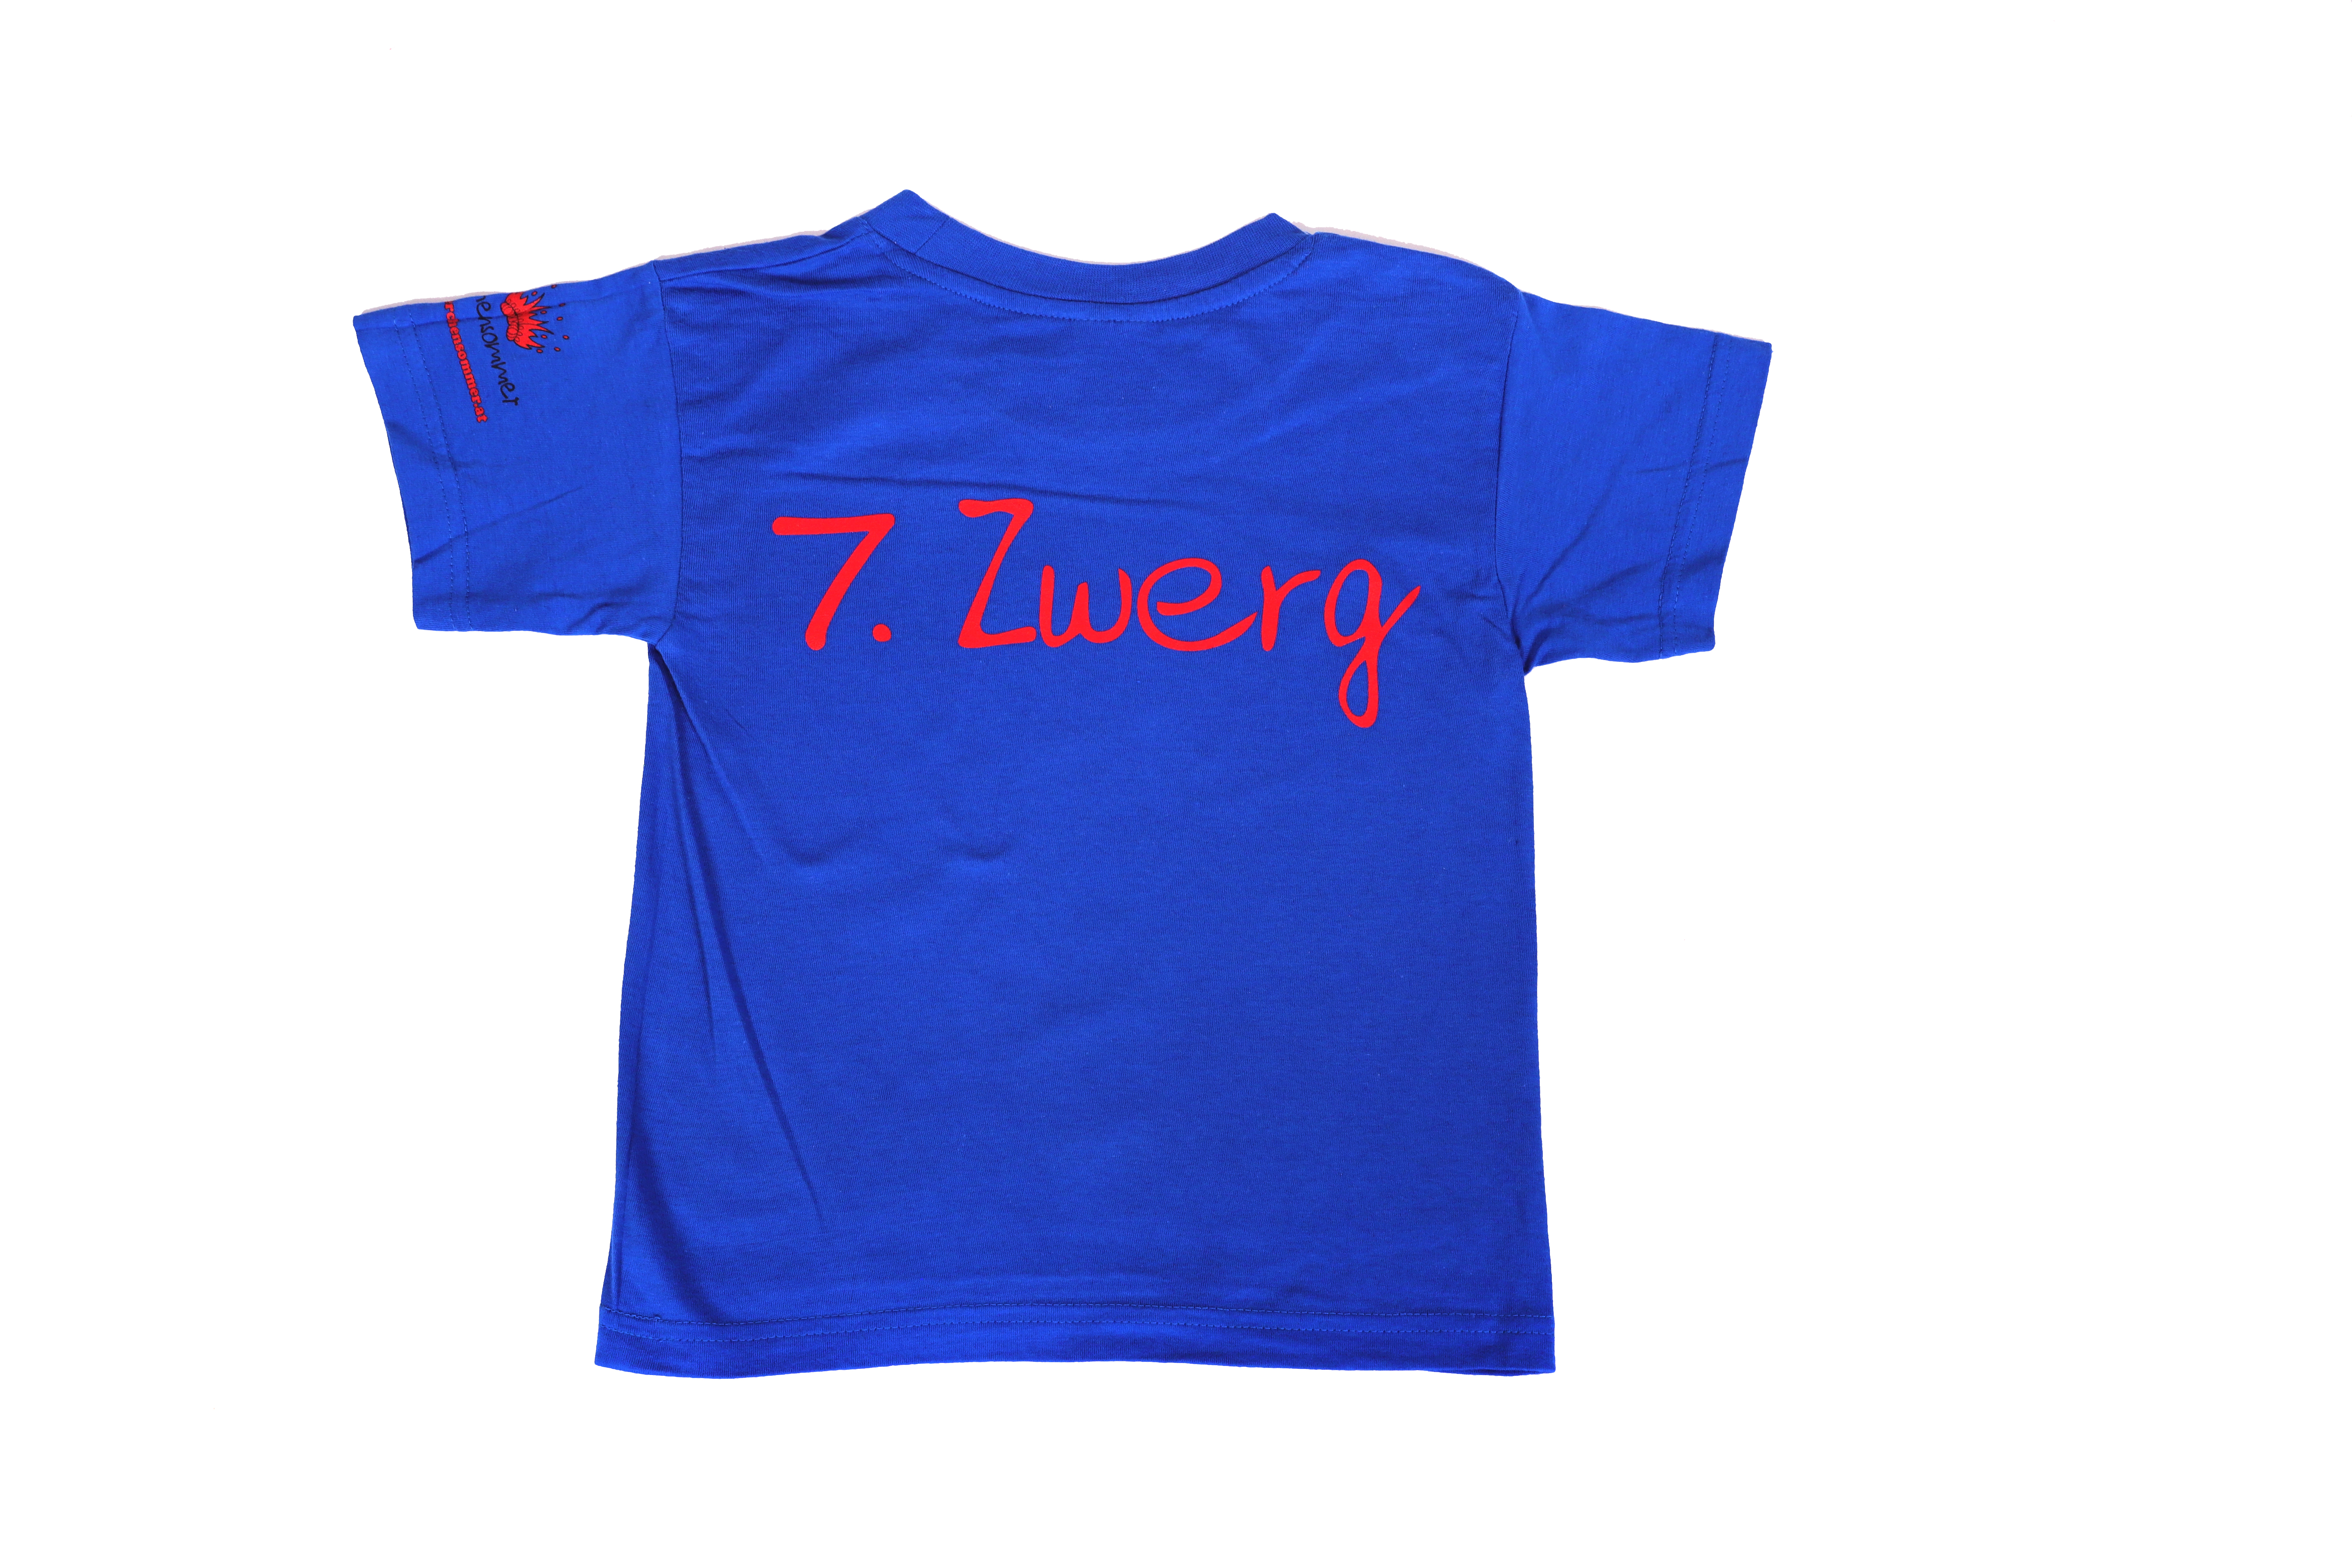 Schneewittchen T-Shirt "7. Zwerg" Blau